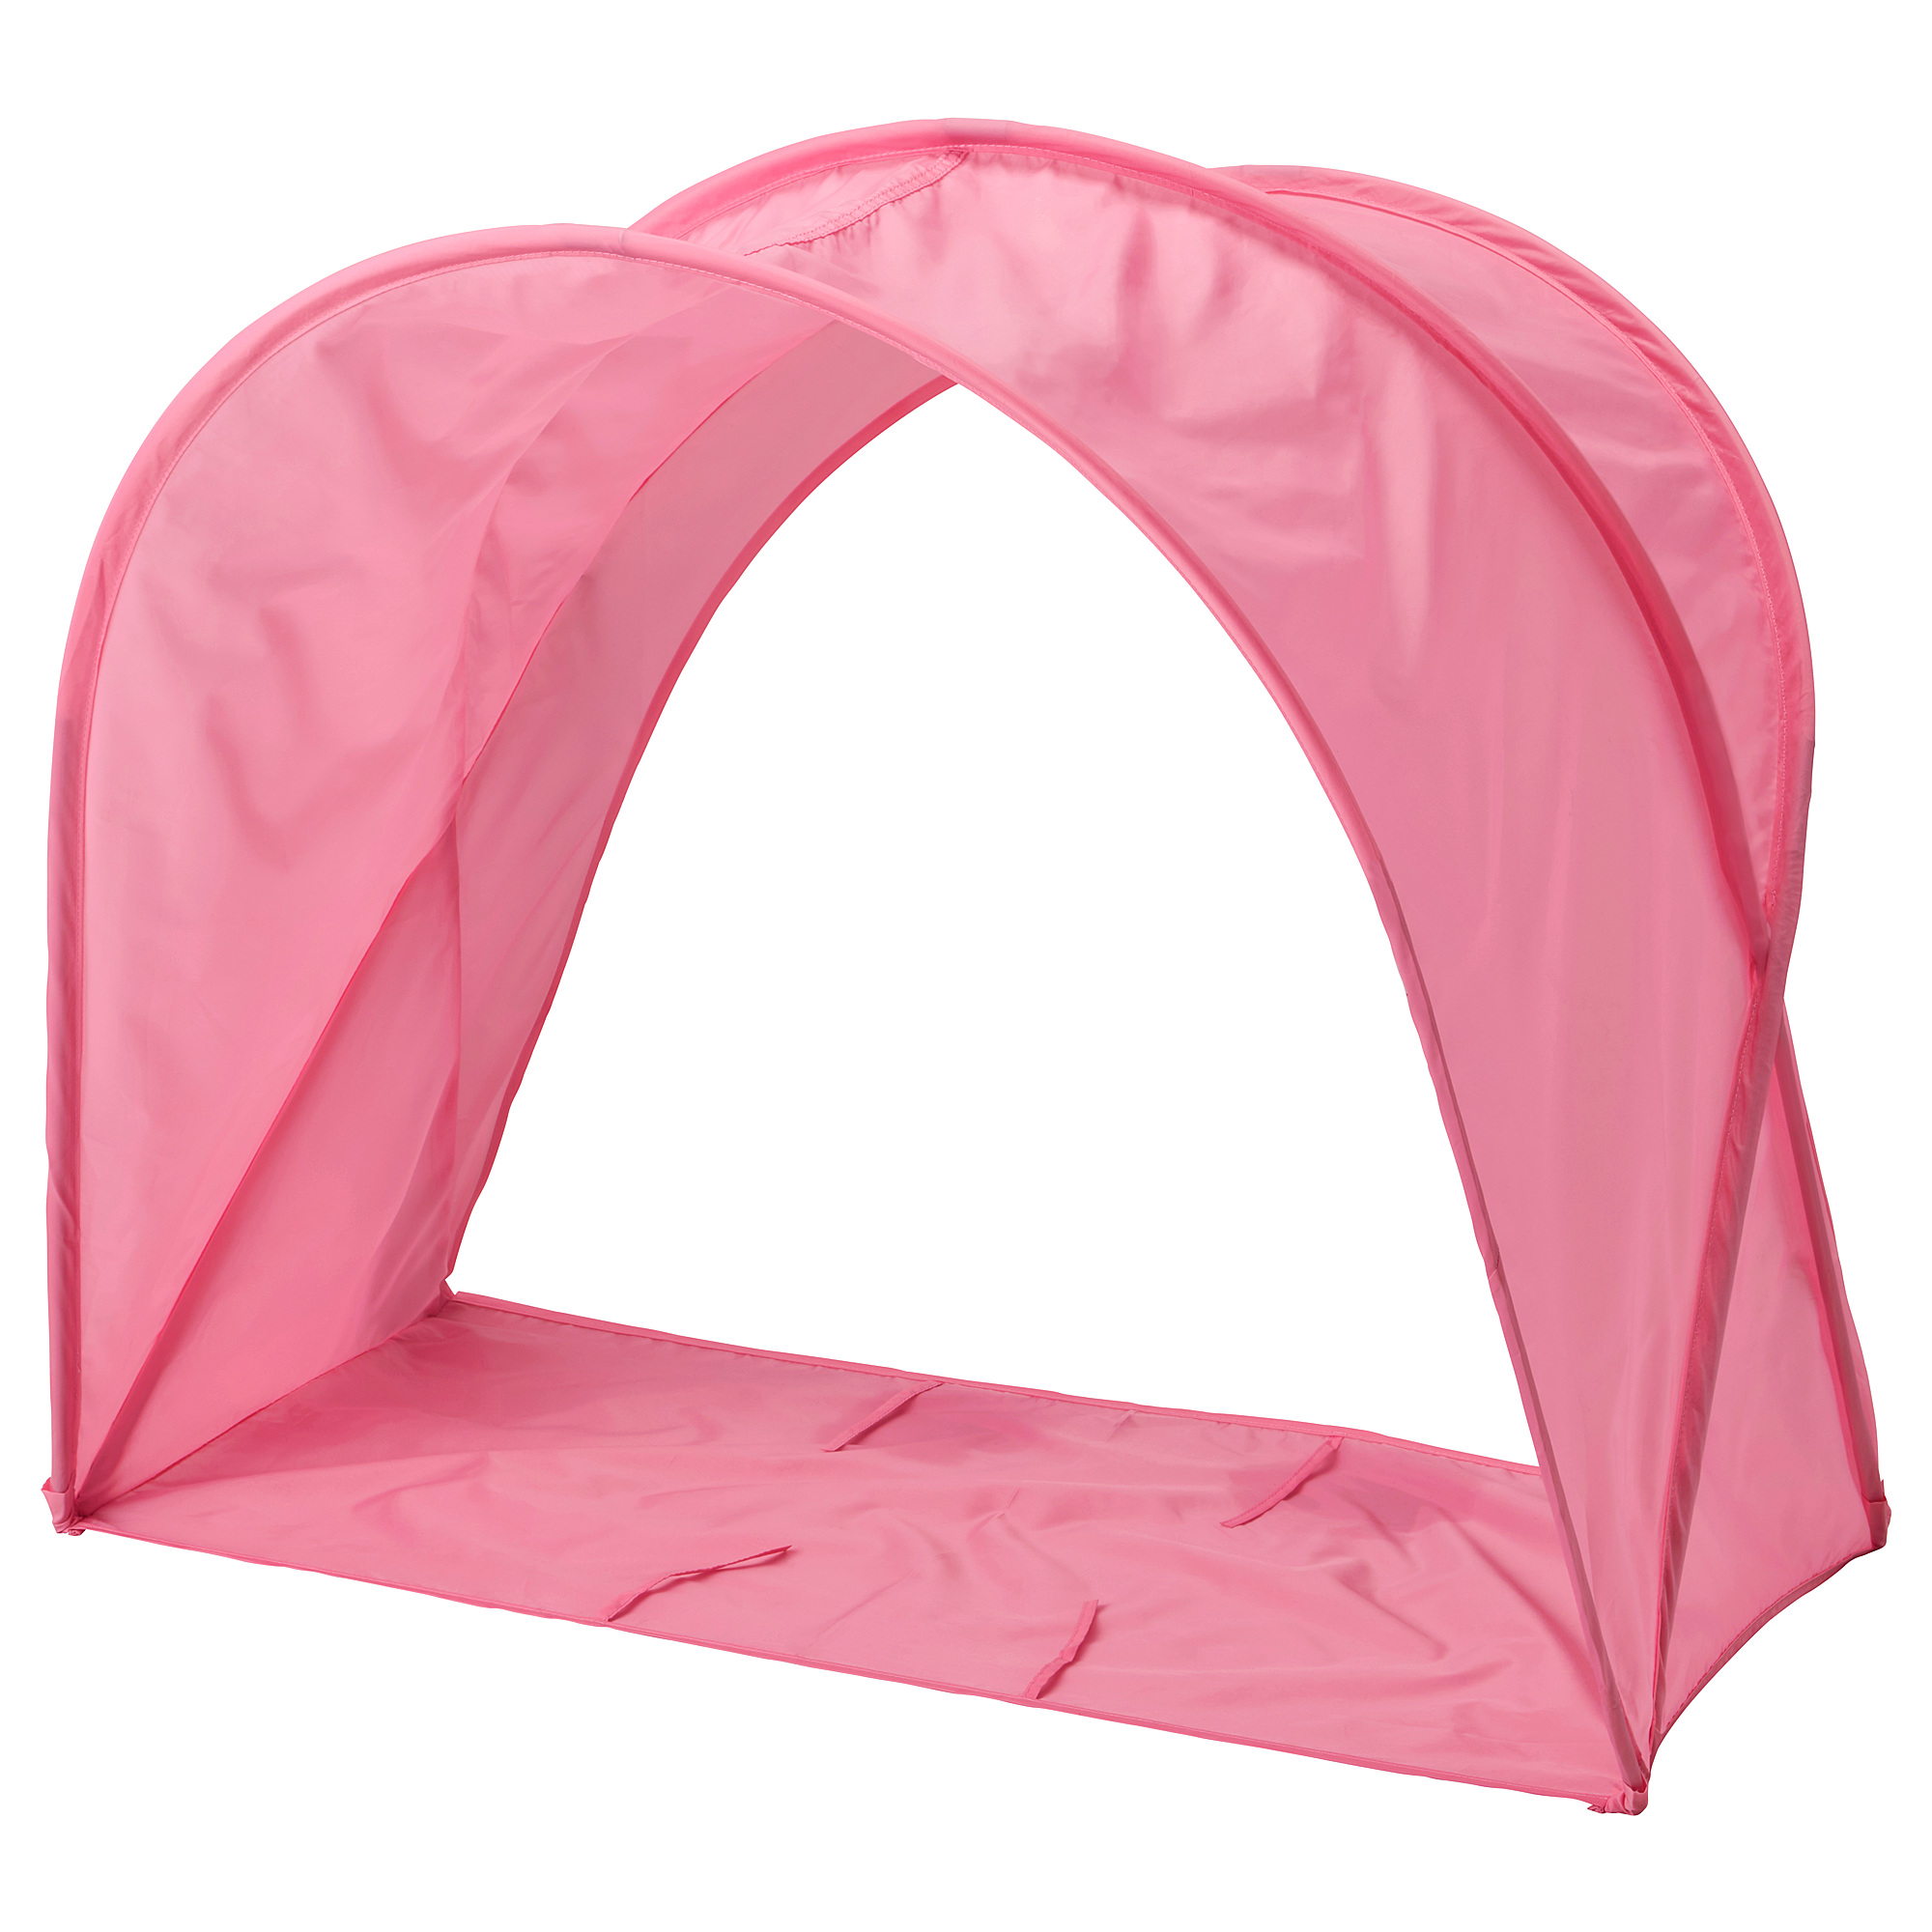 SUFFLETT bed tent